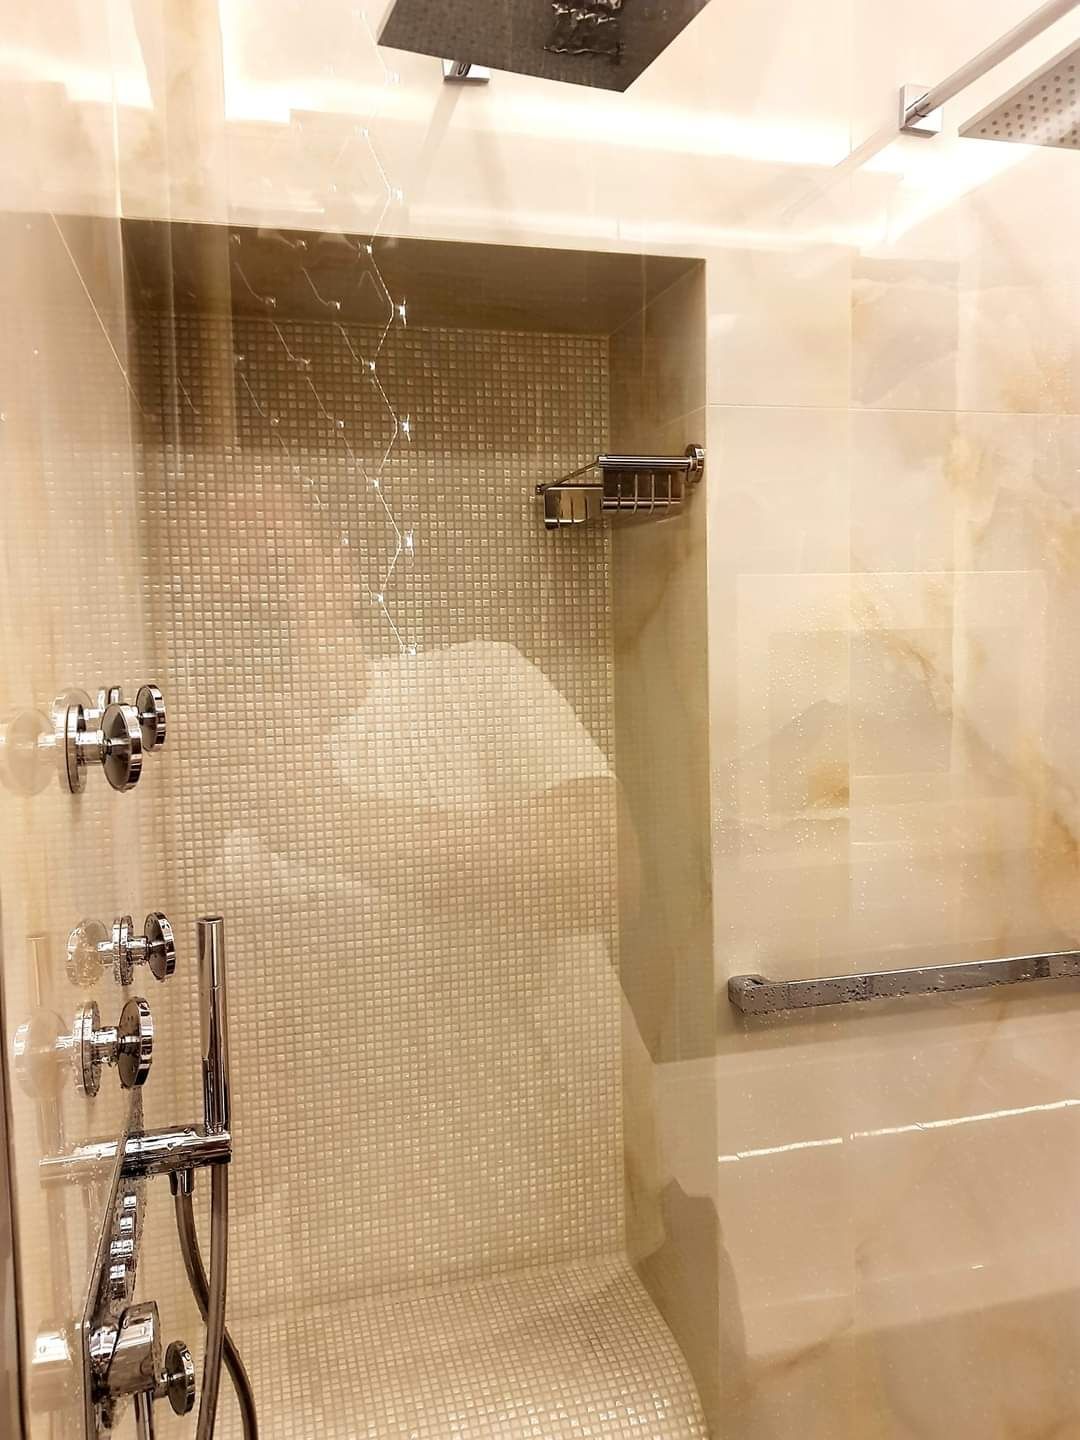 Remonty łazienek kafelkowanie malowanie gładzie gipsowe